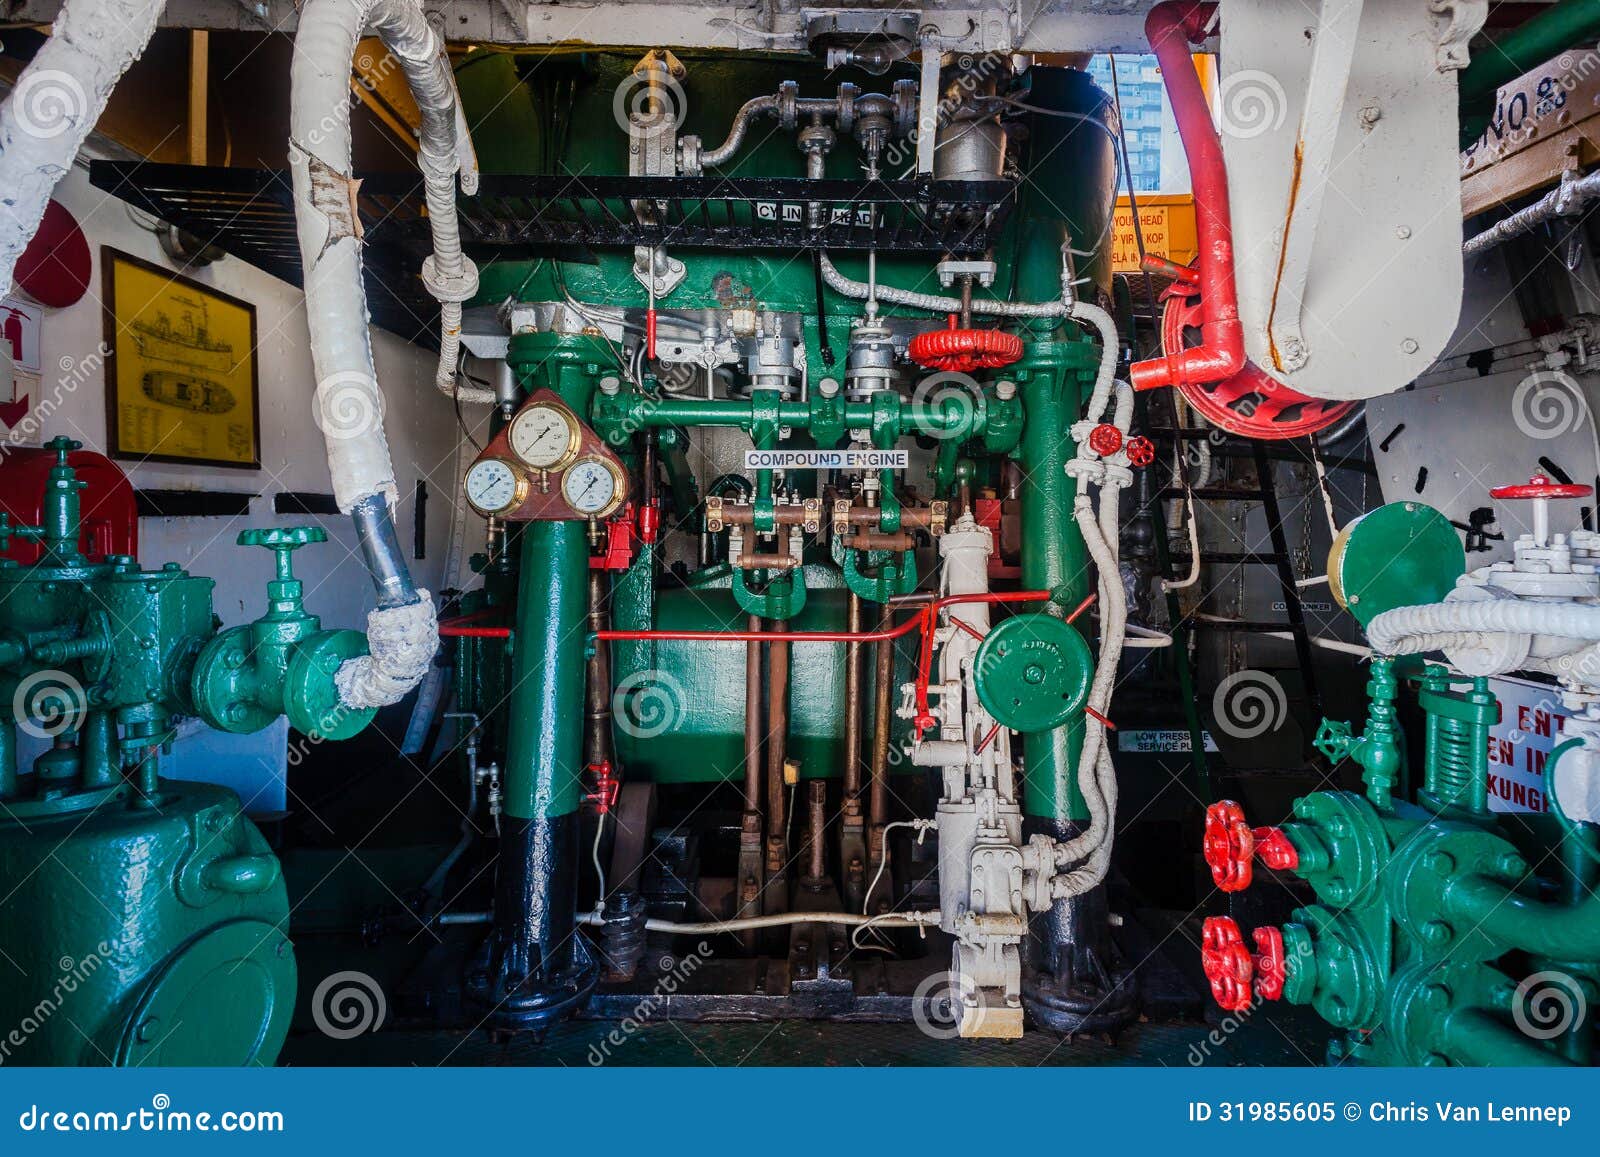 Steam Tug Vessel Engine Room Editorial Image - Image: 31985605